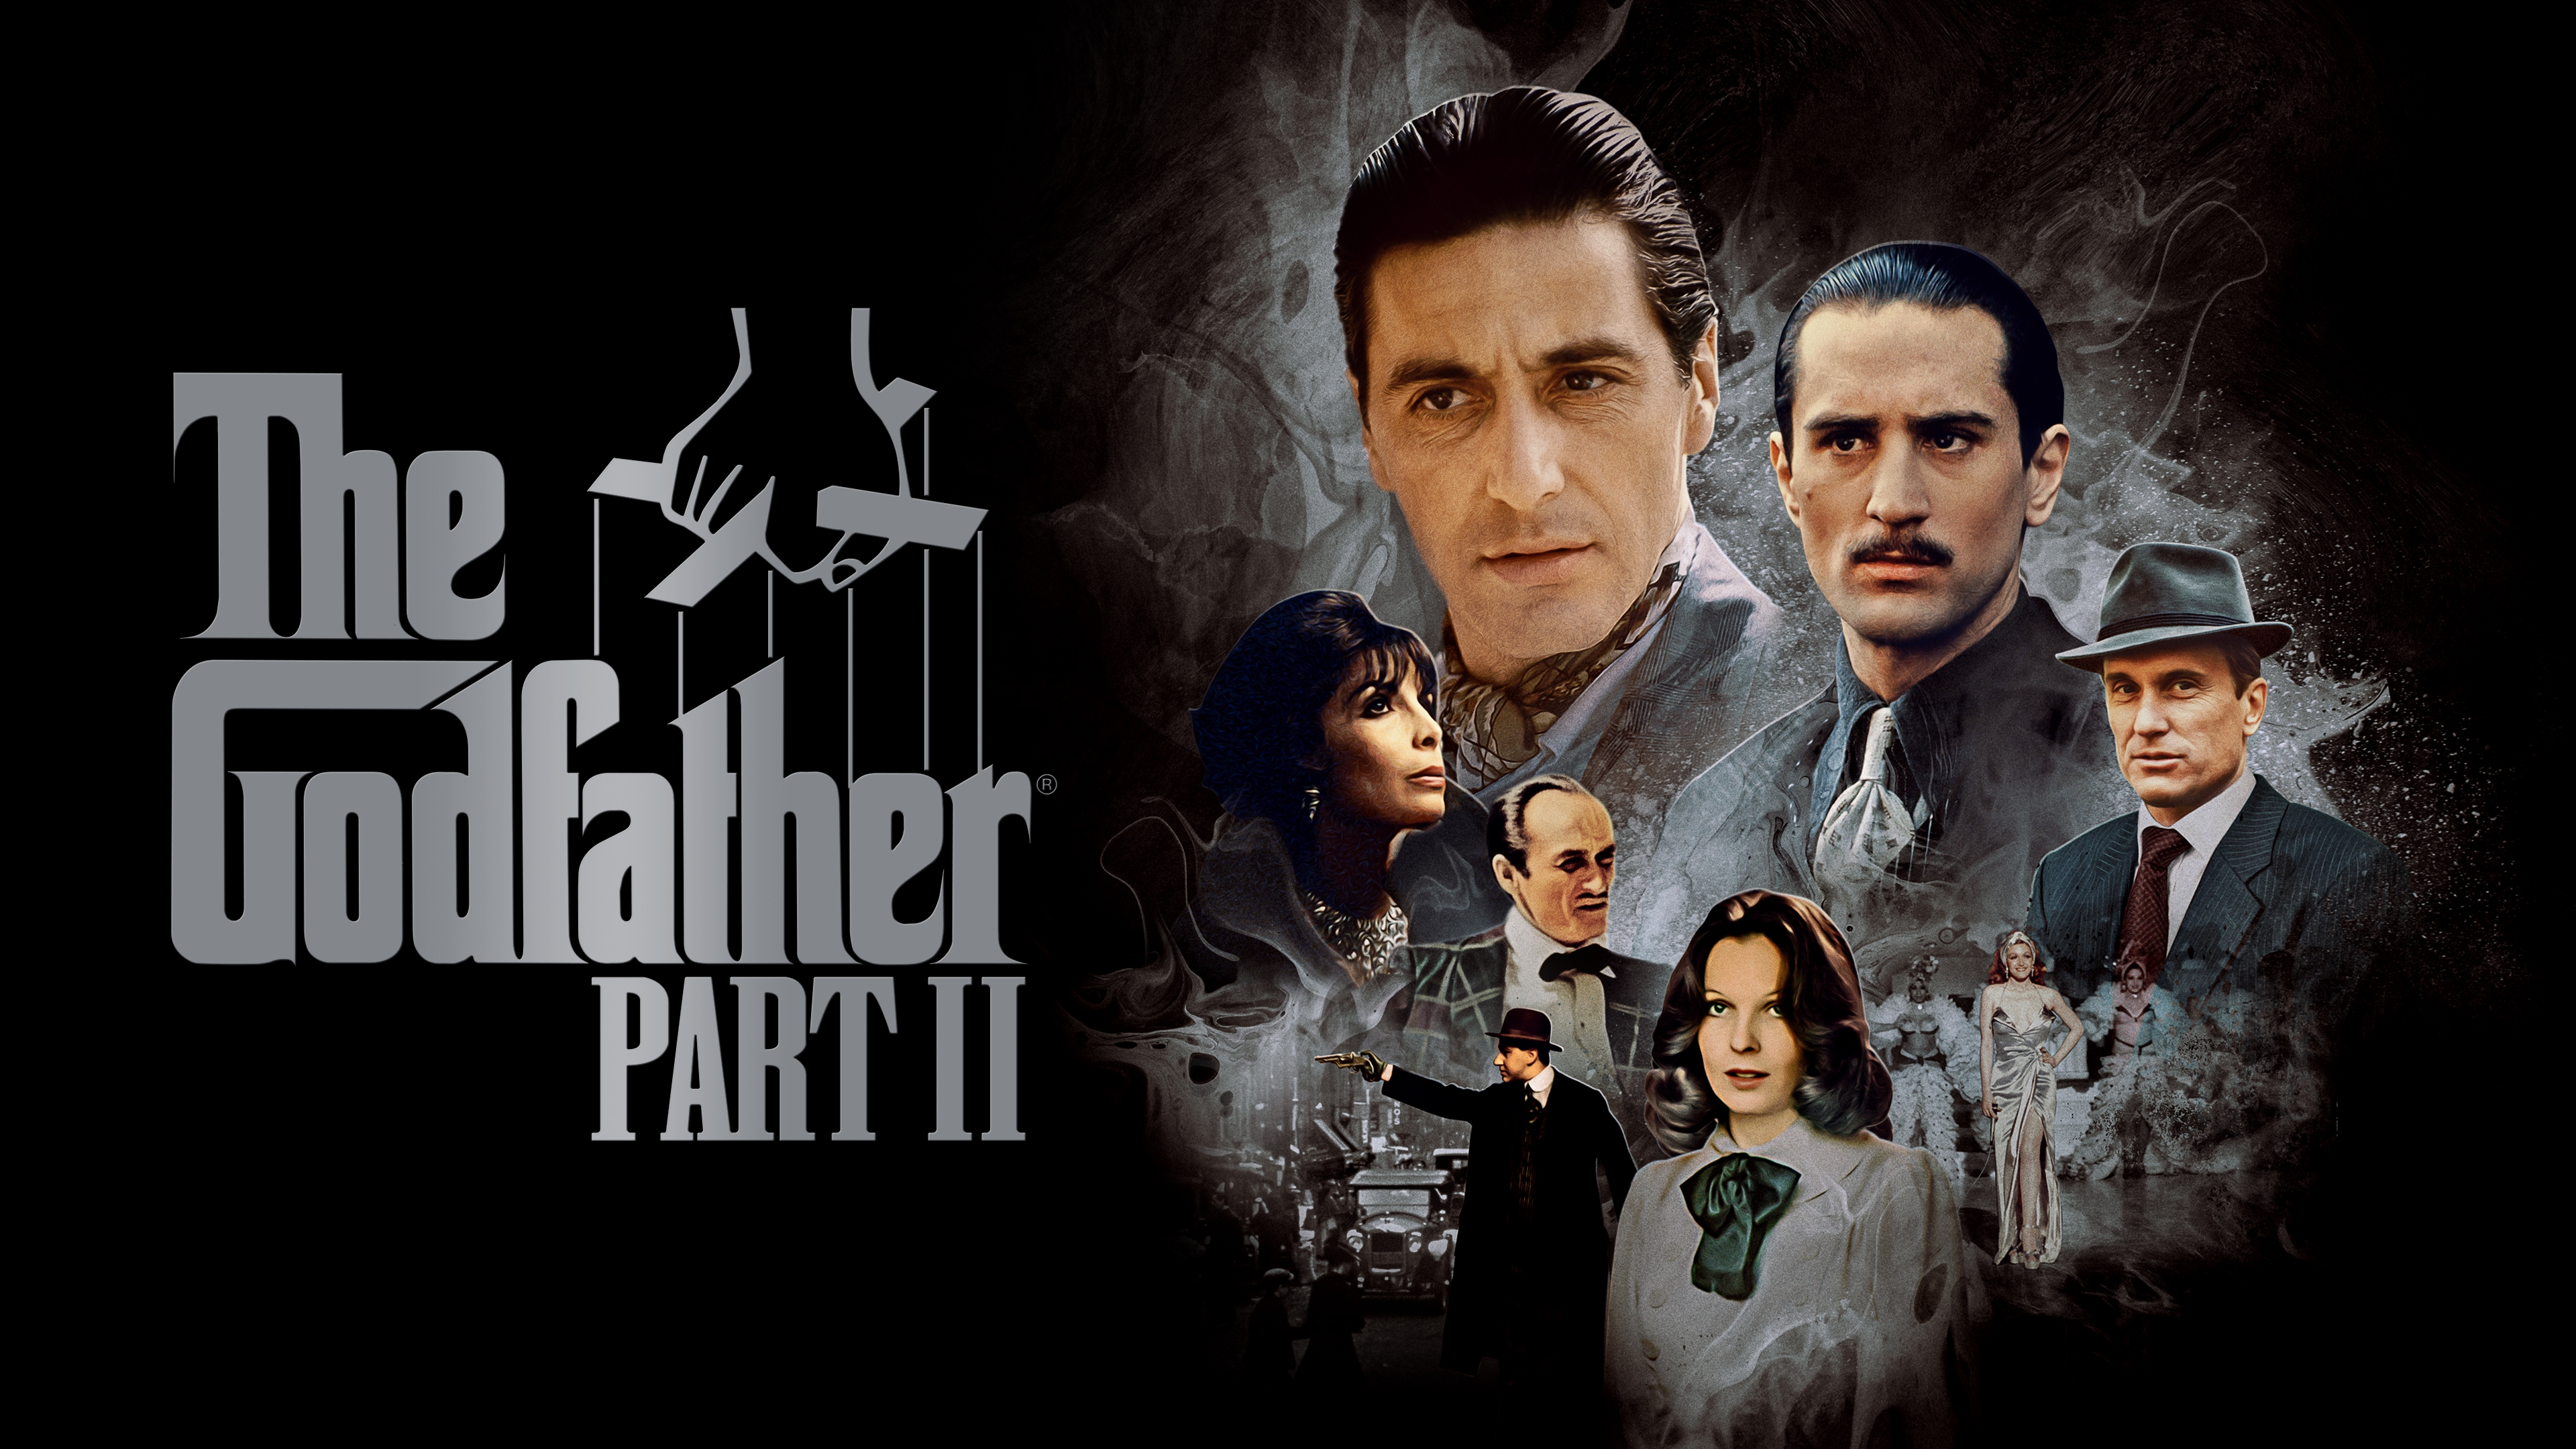 HD wallpaper, Vito Corleone, Al Pacino, Marlon Brando, The Godfather, Michael Corleone, Movie Poster, Dark Background